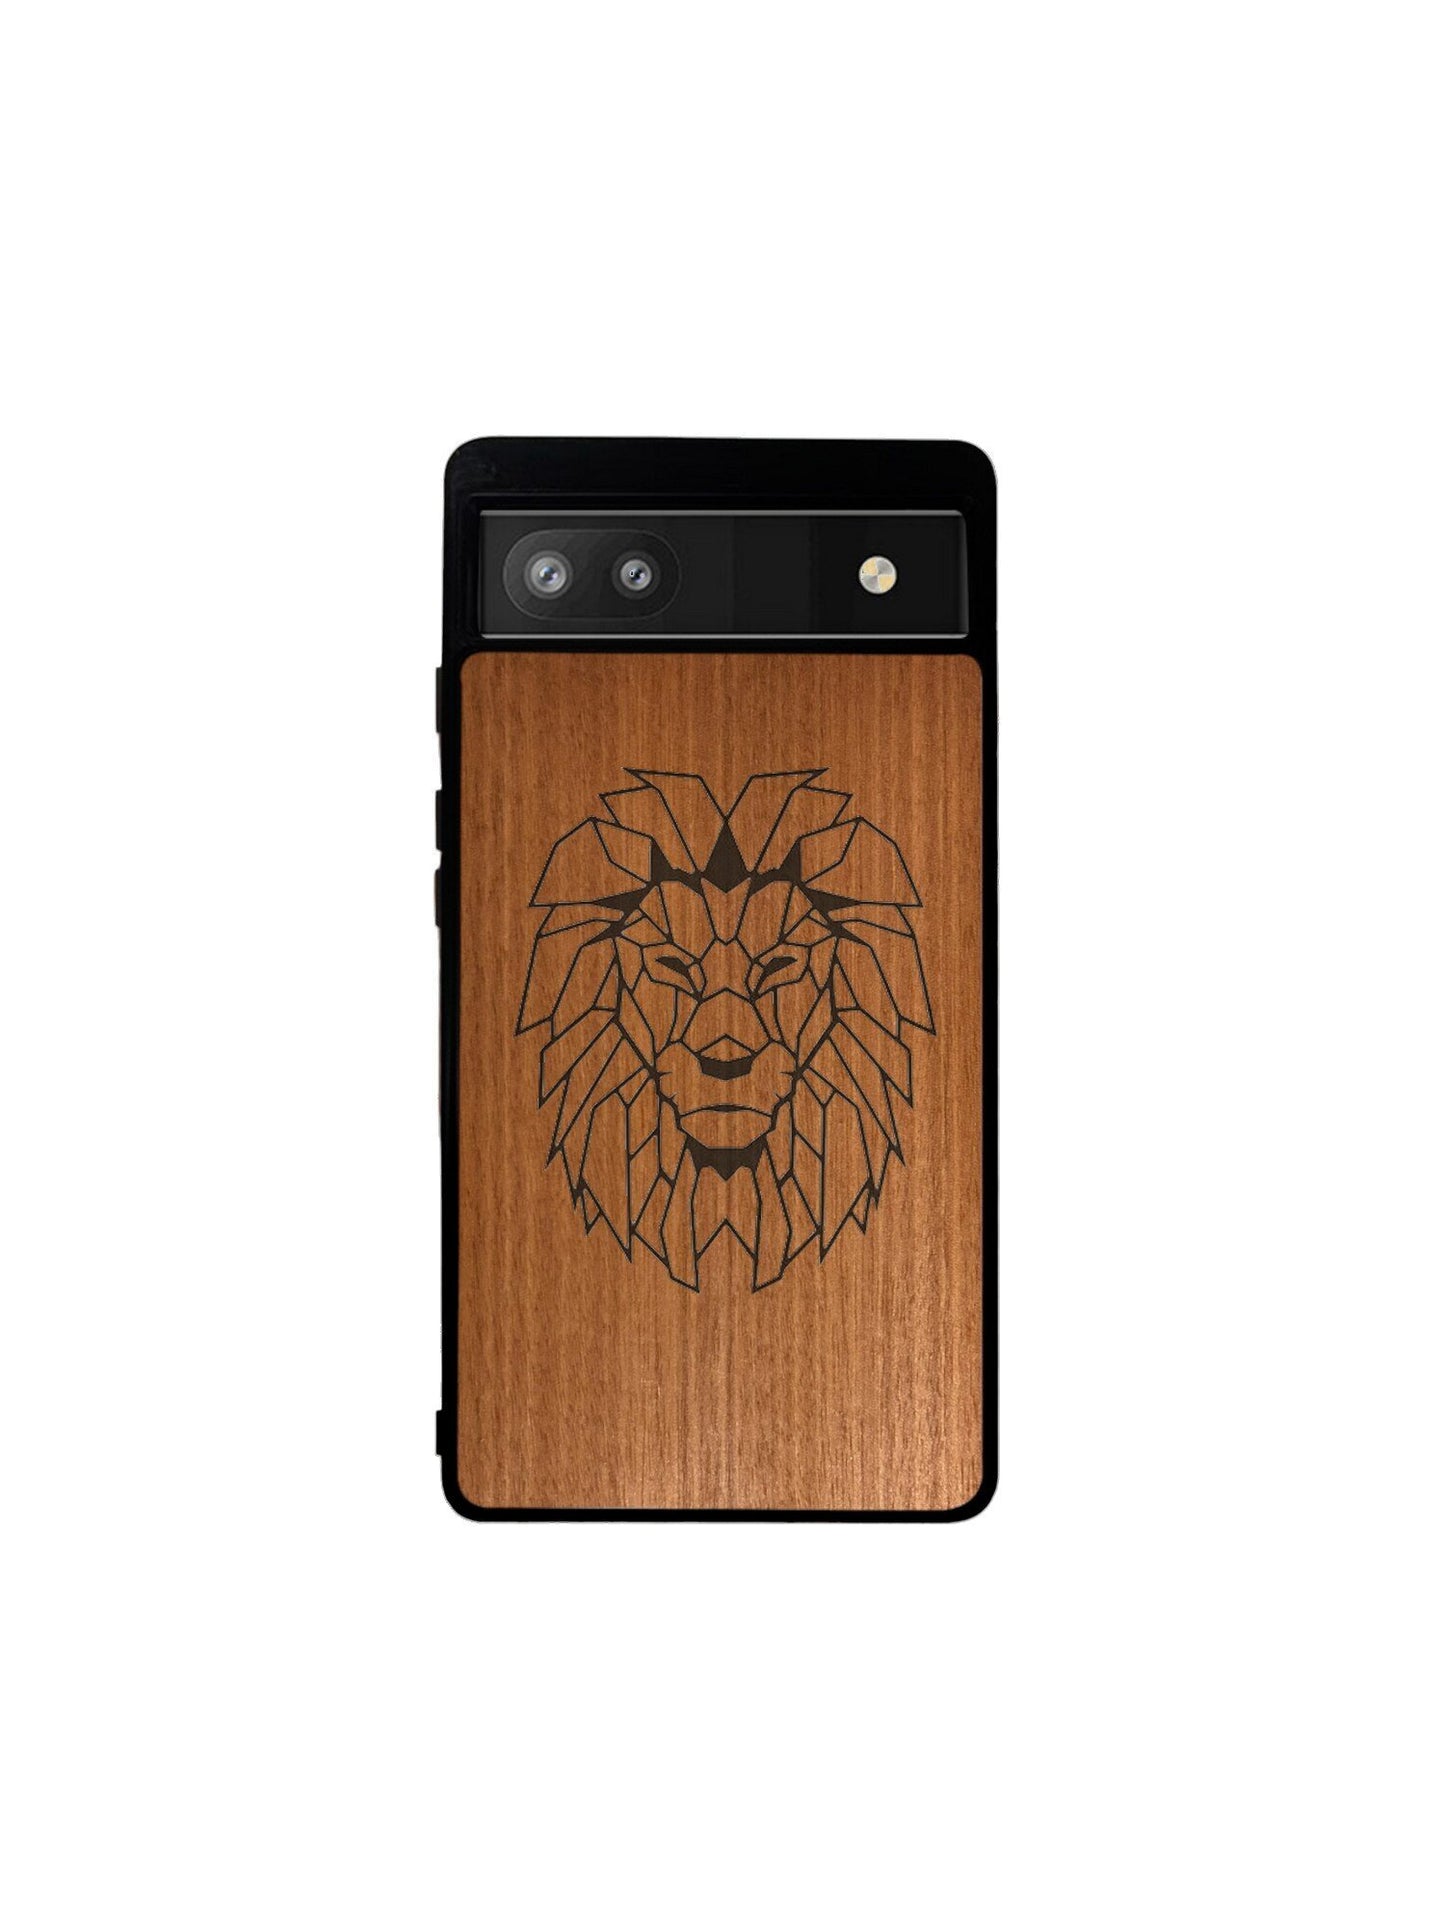 Google Pixel case - Lion engraving